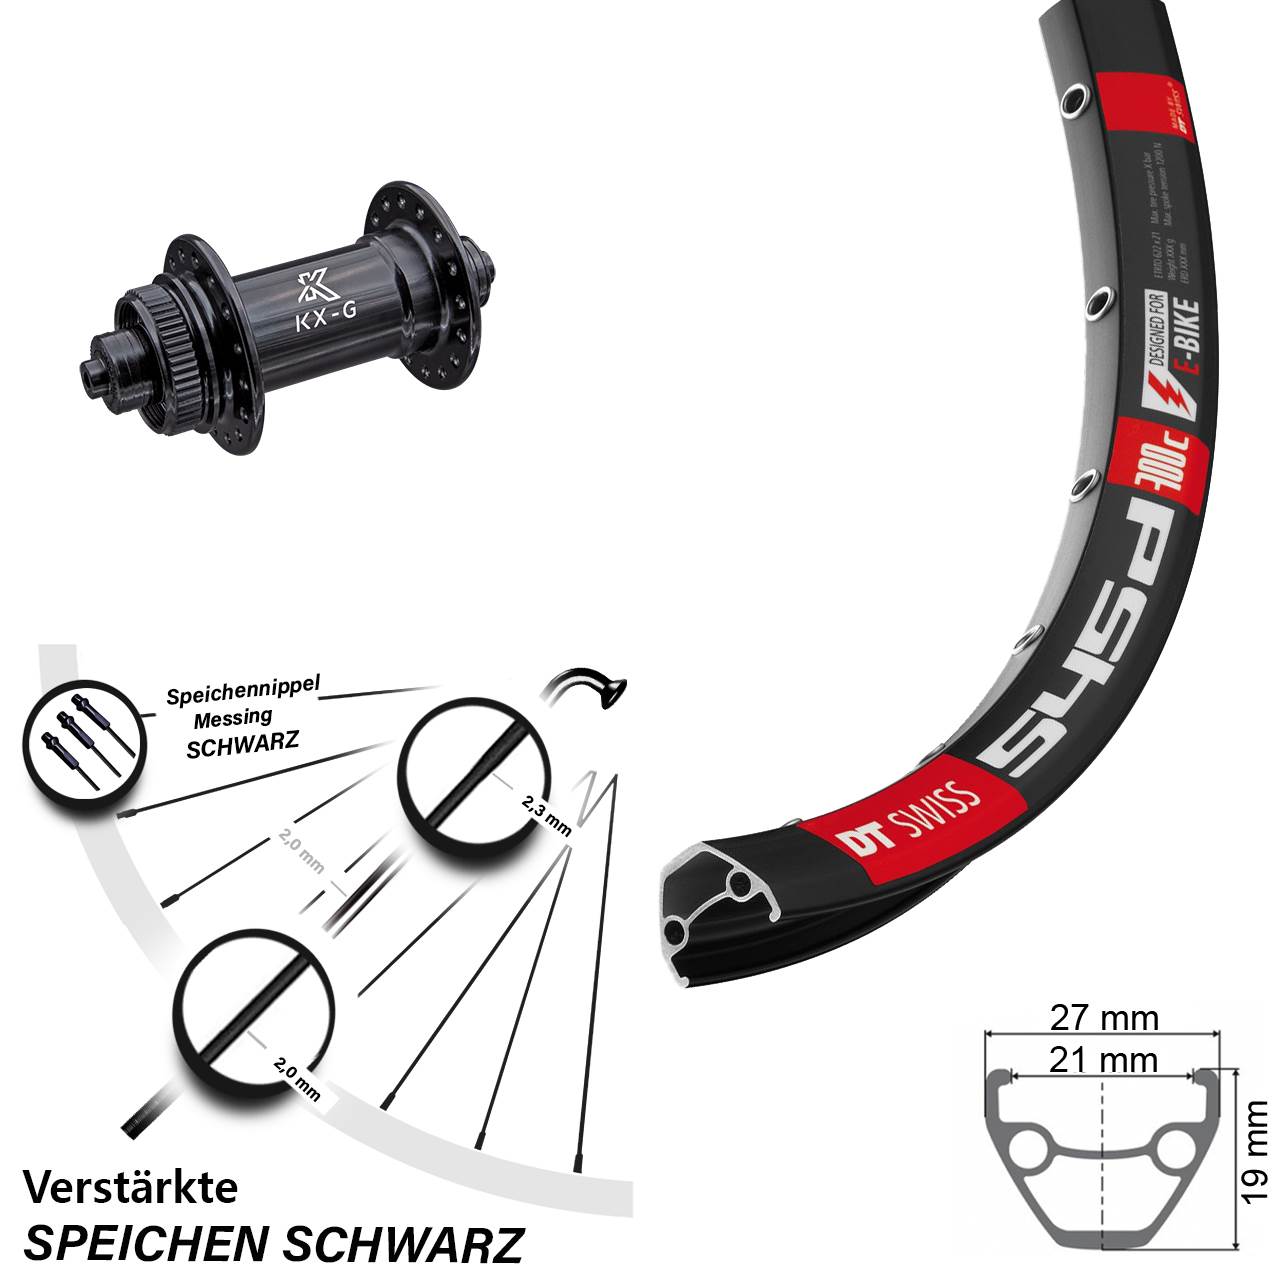 DT Swiss 545 Disc-Vorderrad verstärkt 28-29 Zoll mit KX-G Schnellspanner